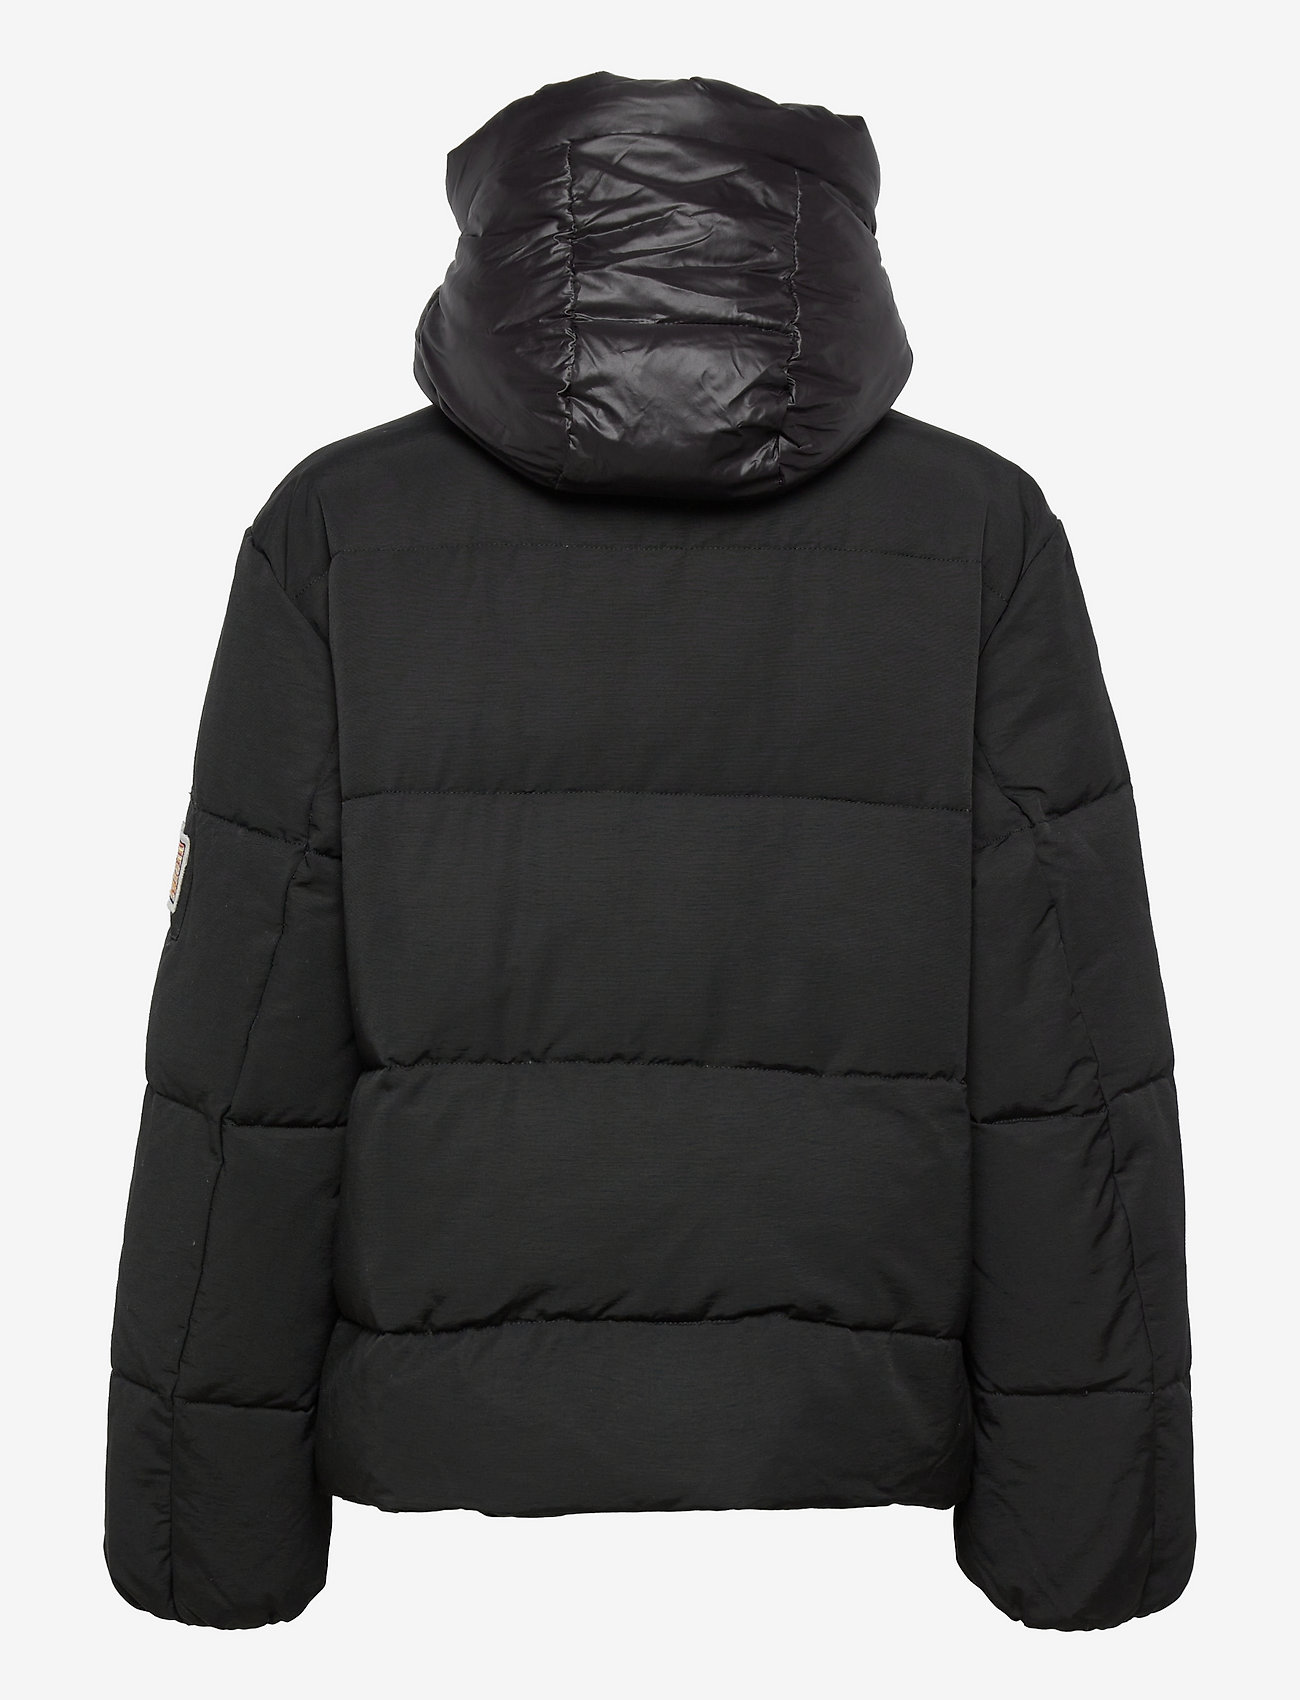 Svea - W. Hooded Puffer Jacket - winter jackets - black - 1